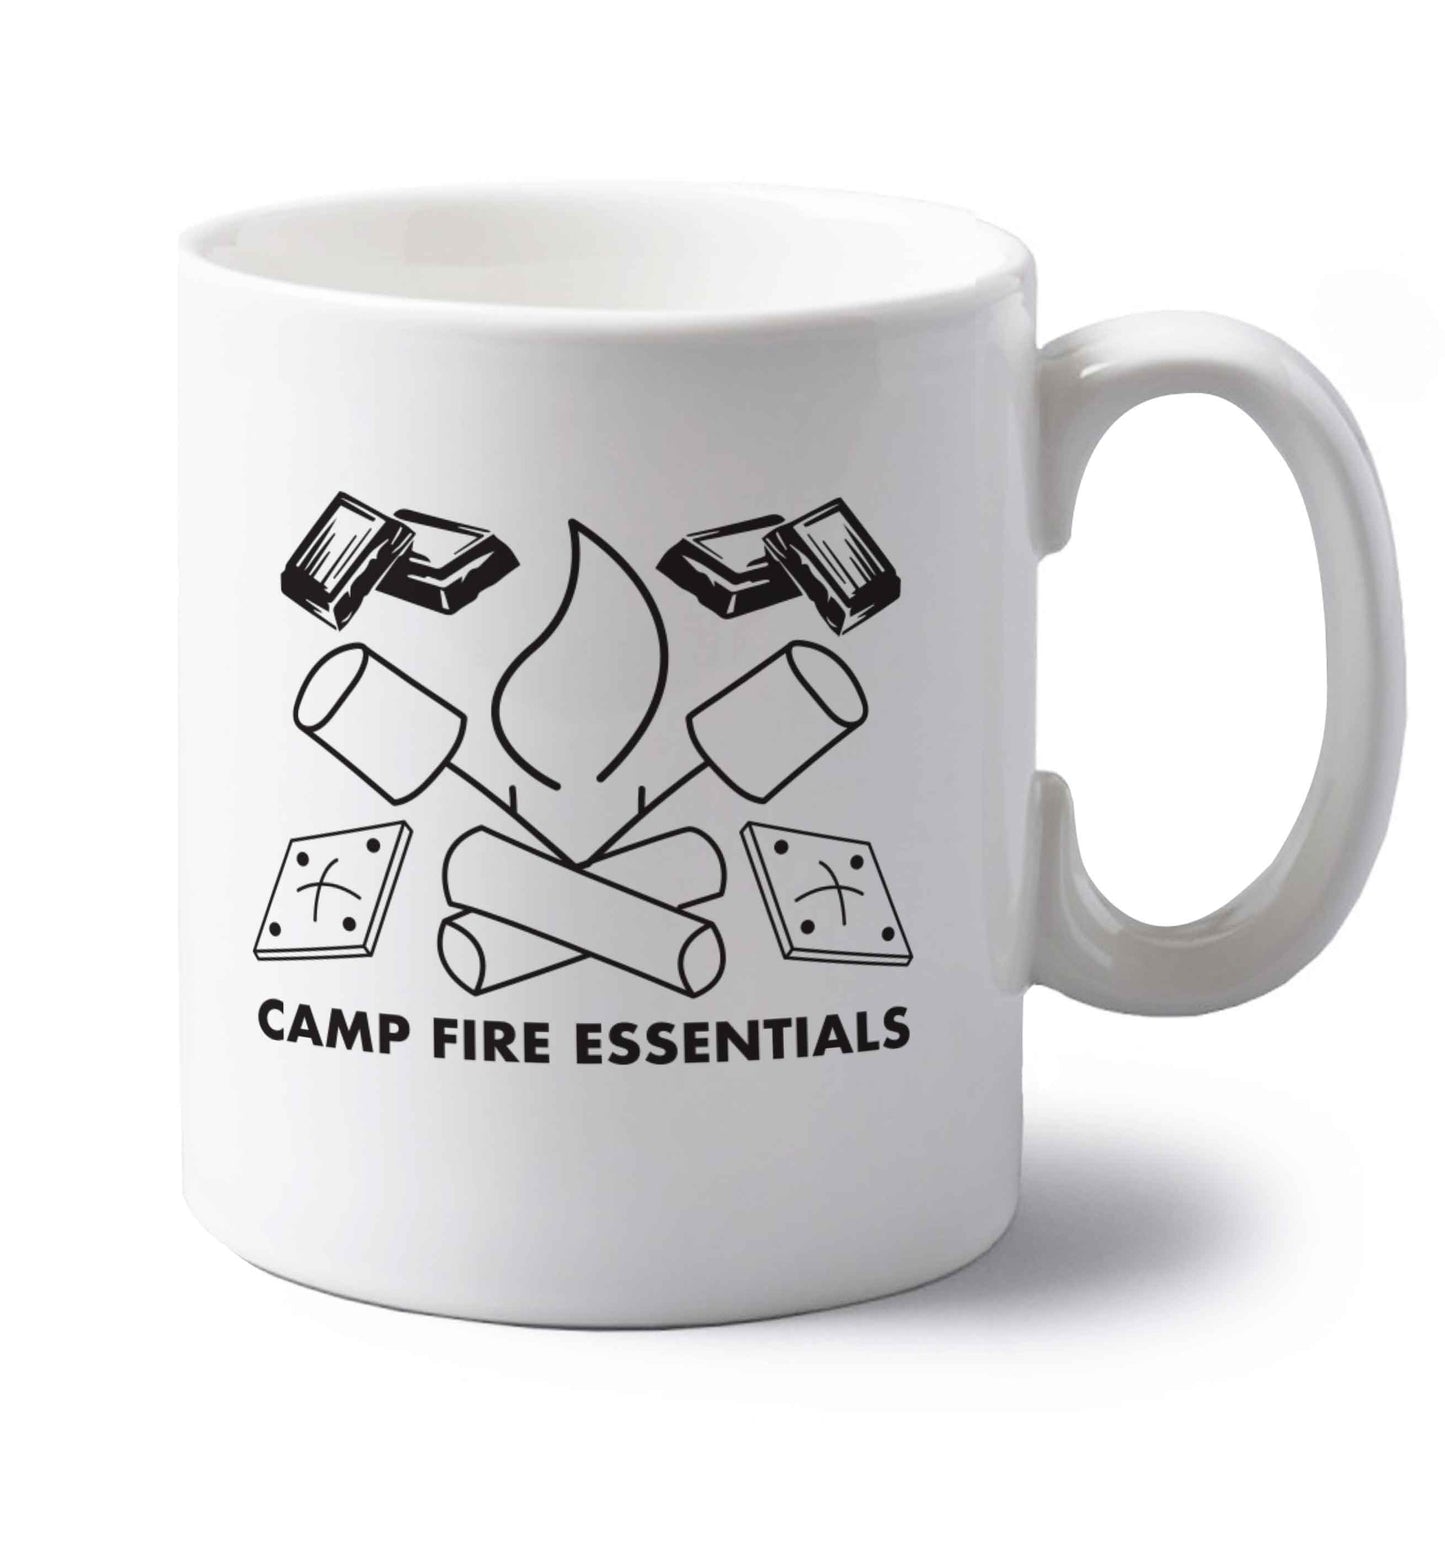 Campfire essentials left handed white ceramic mug 